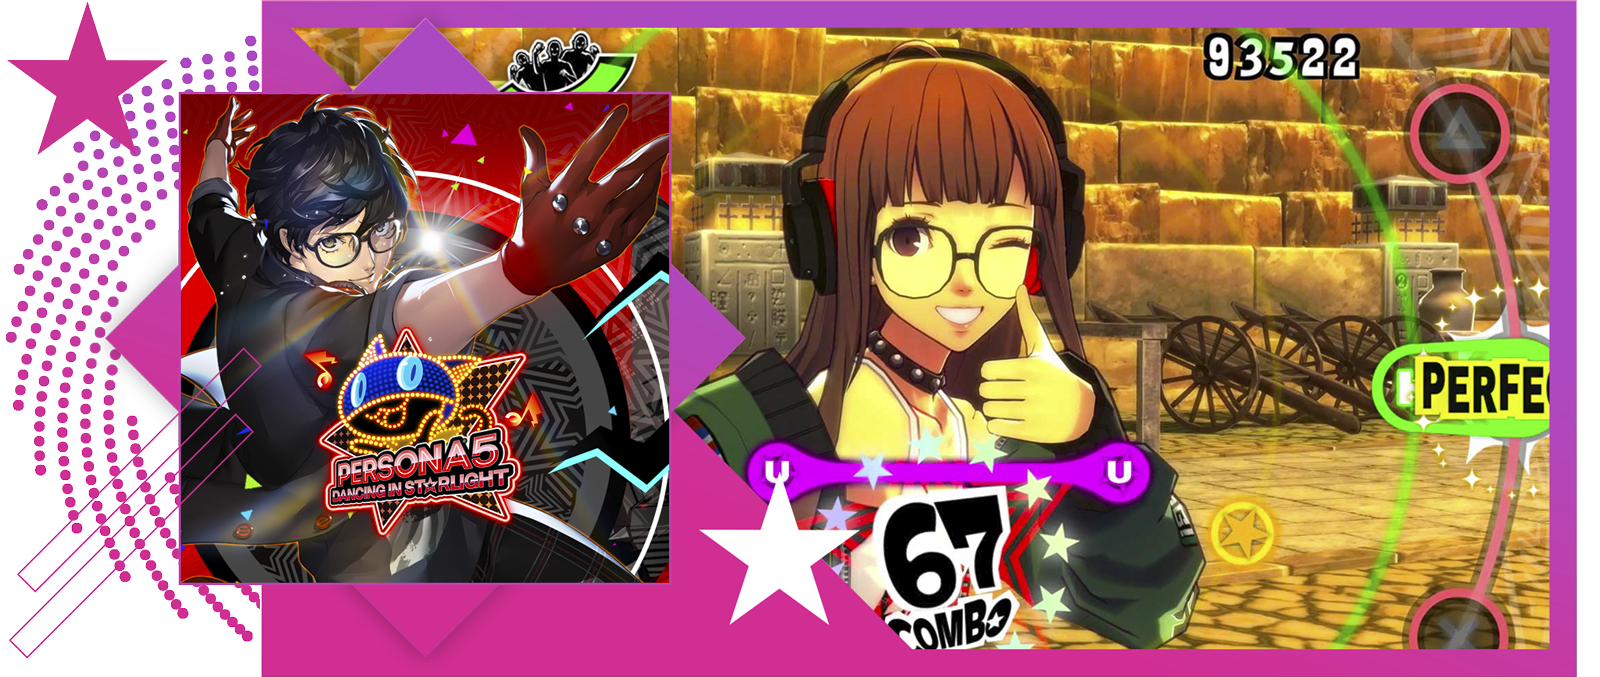 Melhores jogos de ritmo - Imagem em destaque apresentando arte principal e jogabilidade de Persona 5: Dancing in Starlight.